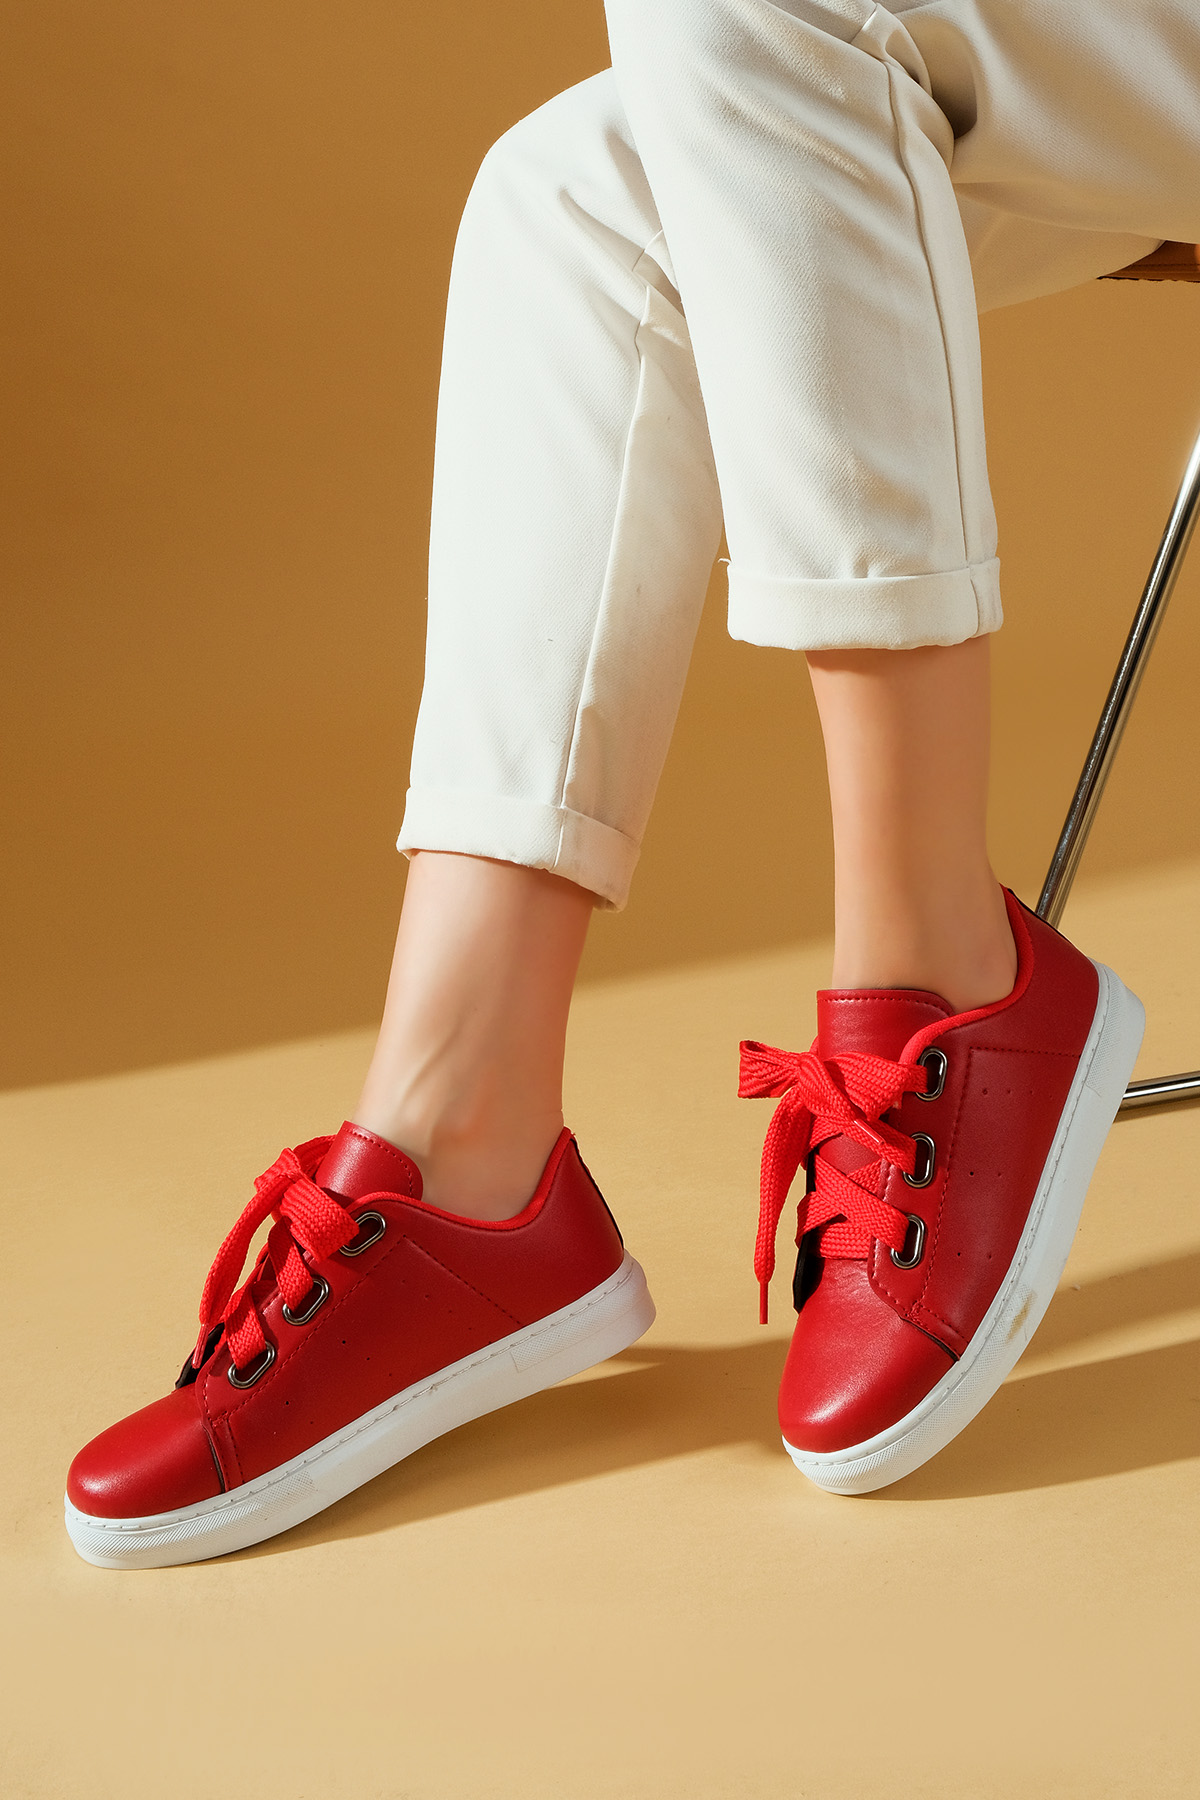 Pembe Potin Yeni Sezon Özel Tasarım Kalın Bağcıklı Rahat Kalıp Kadın Spor Ayakkabı A320-23 - Kırmızı